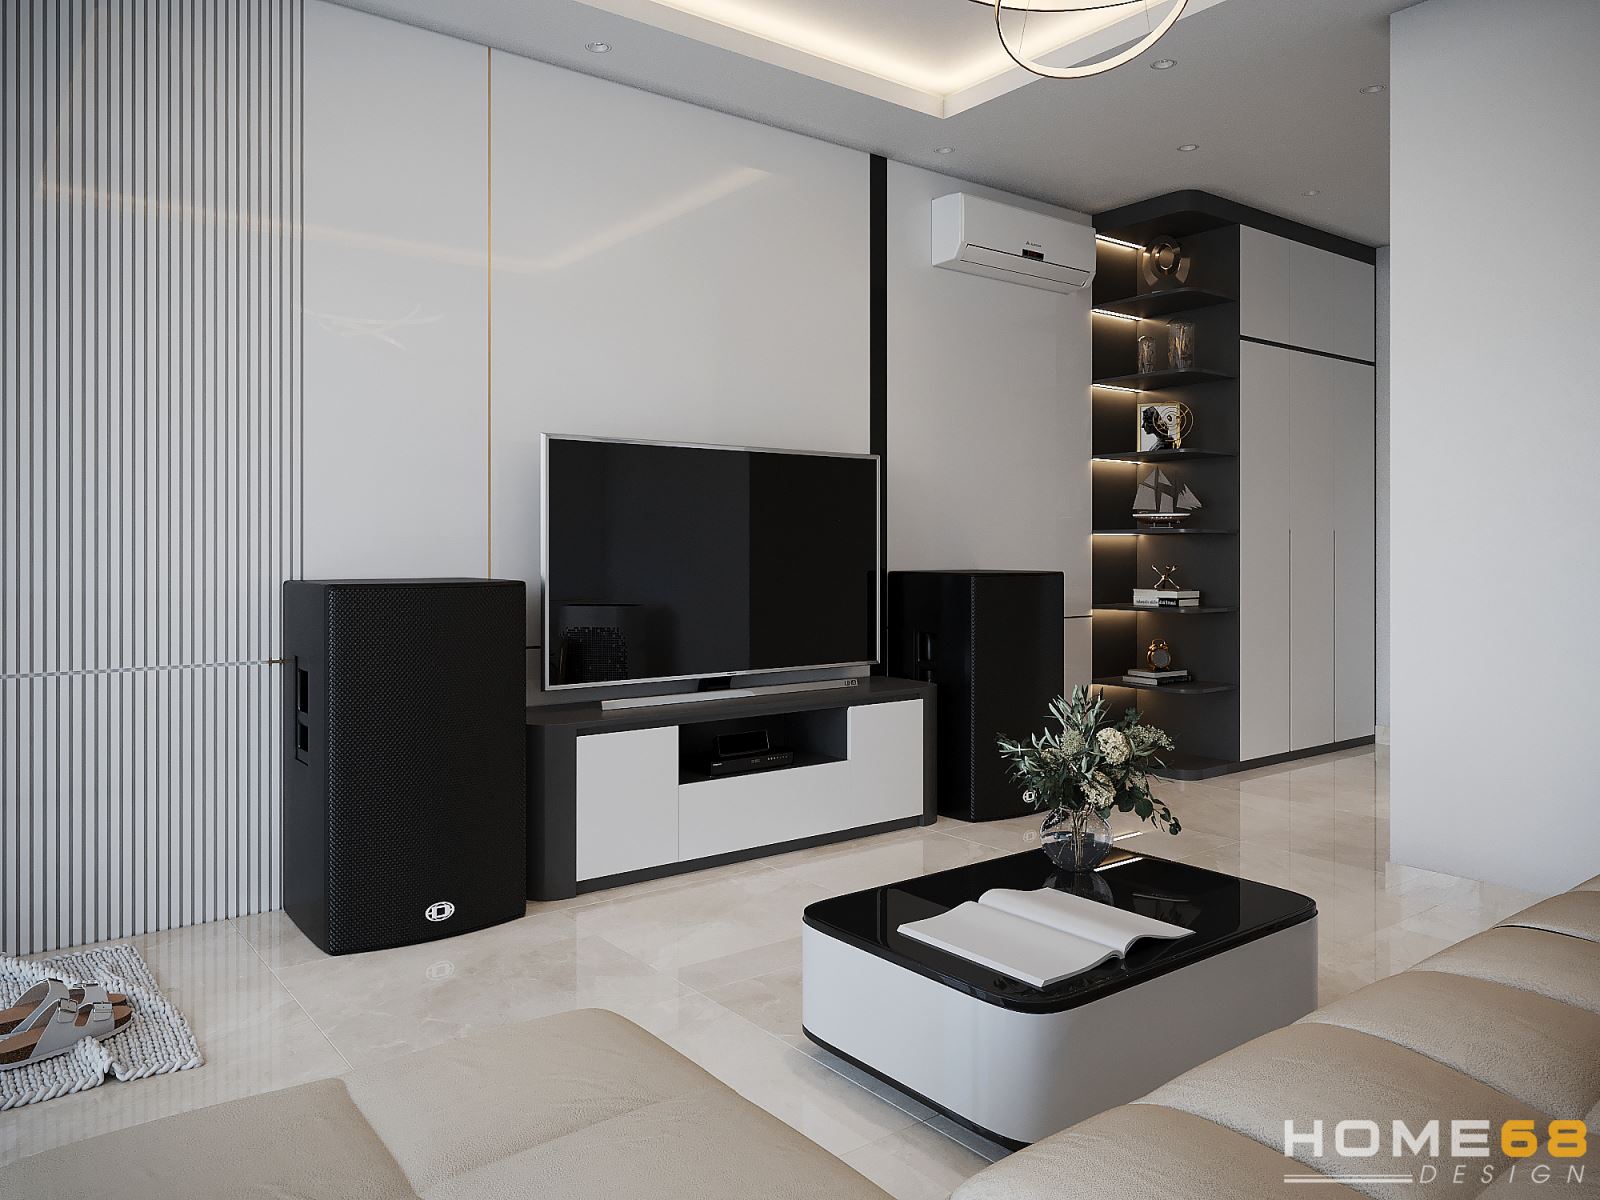 Mẫu thiết kế nội thất phòng khách hiện đại, sang trọng - HOME68